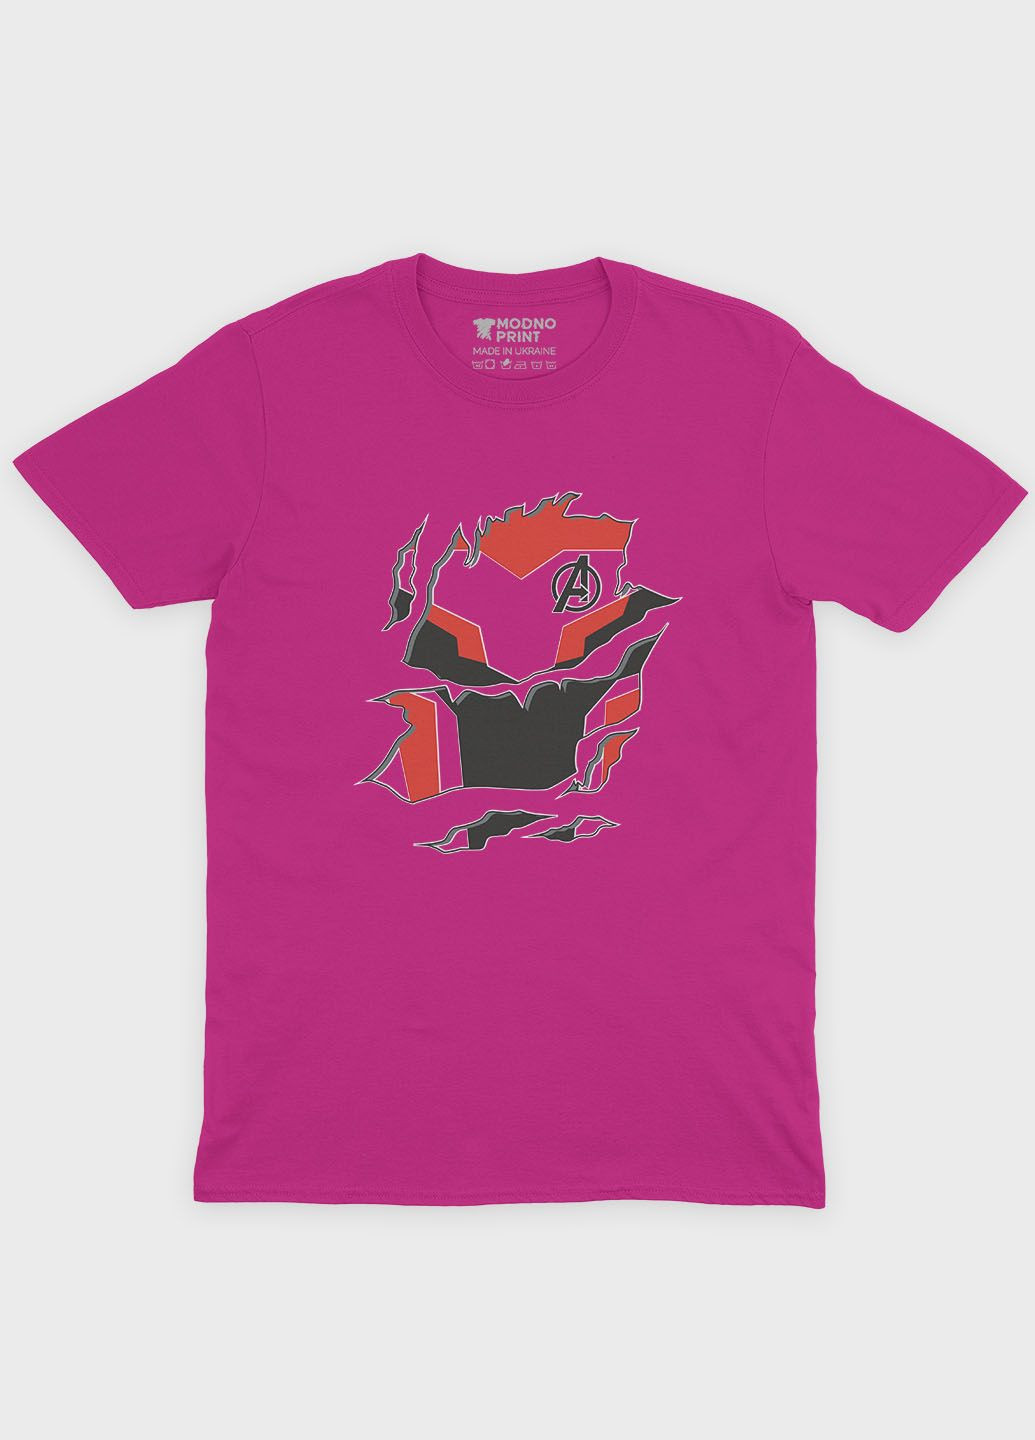 Рожева демісезонна футболка для дівчинки з принтом супергероя - залізна людина (ts001-1-fuxj-006-016-006-g) Modno